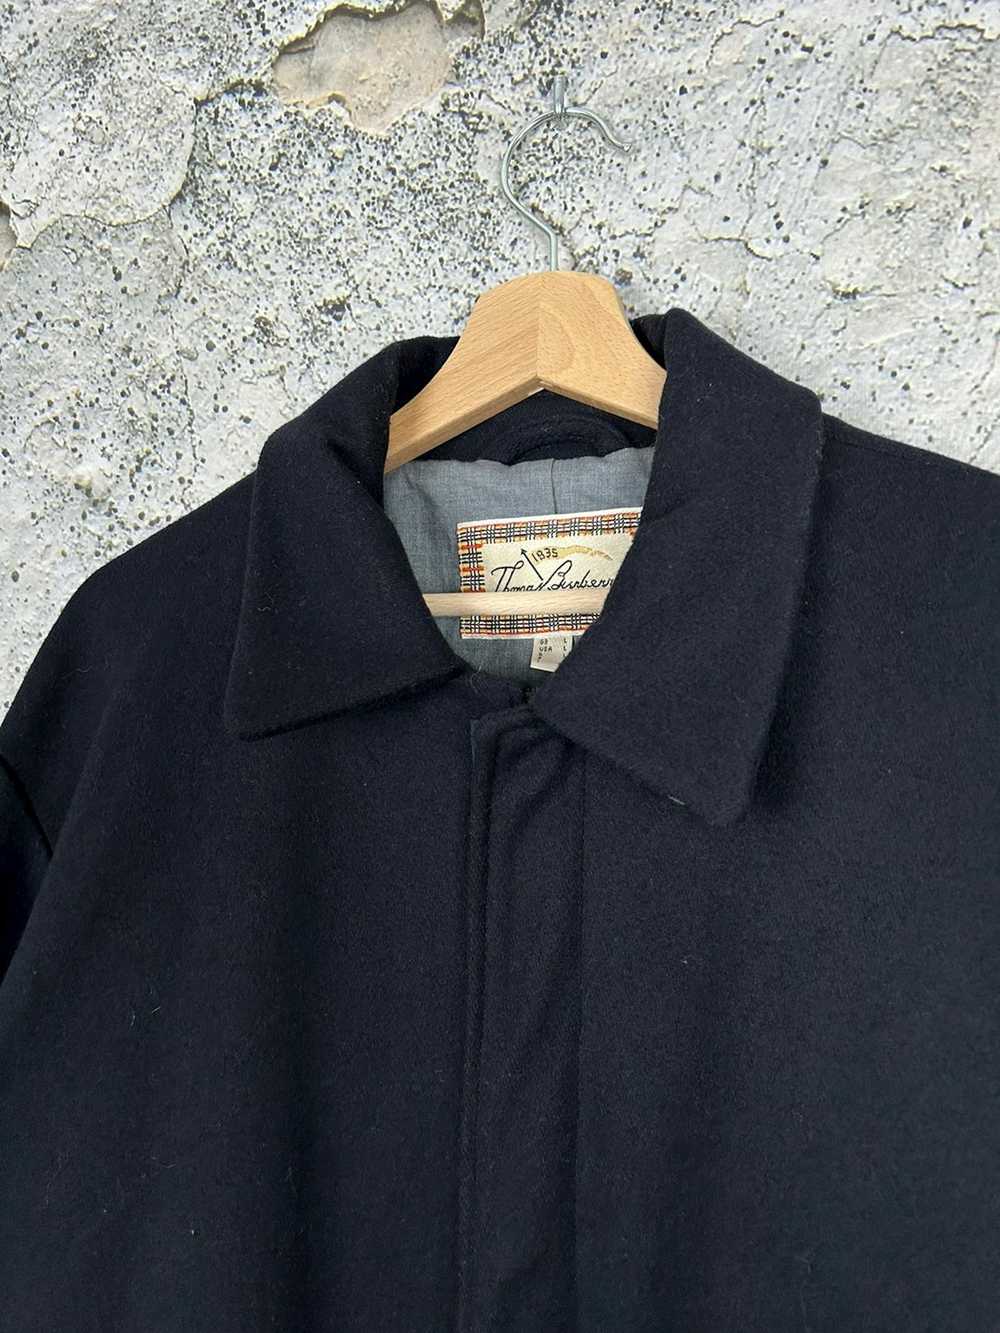 Japanese Brand × Vintage Vintage Wool Thomas Burb… - image 3